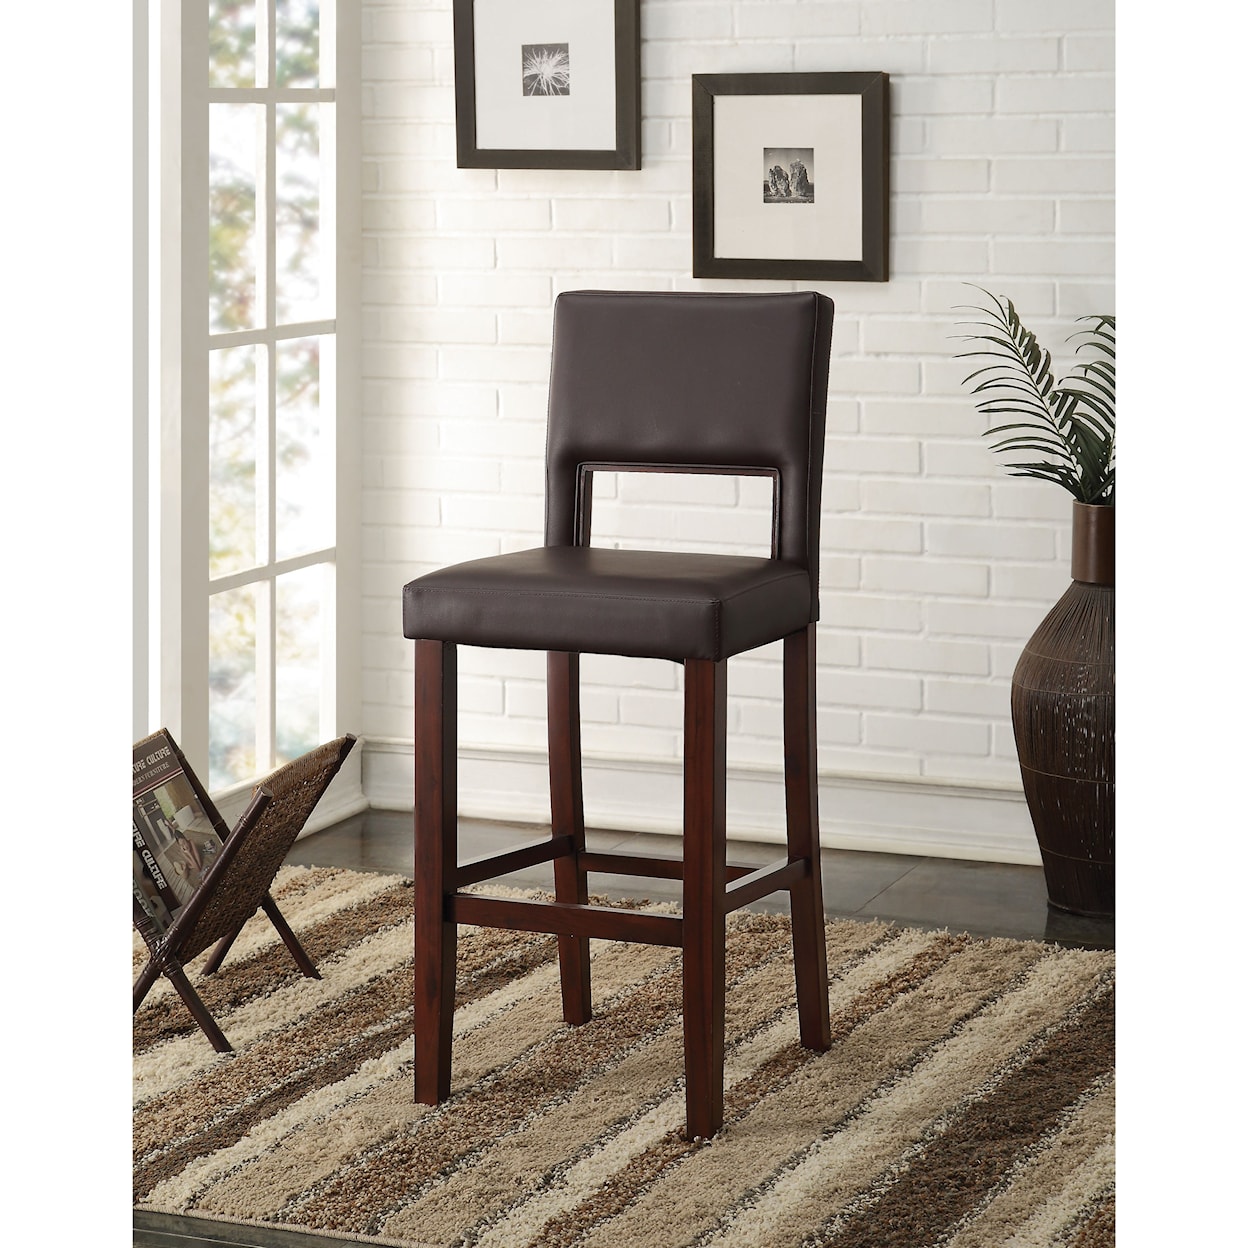 Acme Furniture Reiko Bar Chair